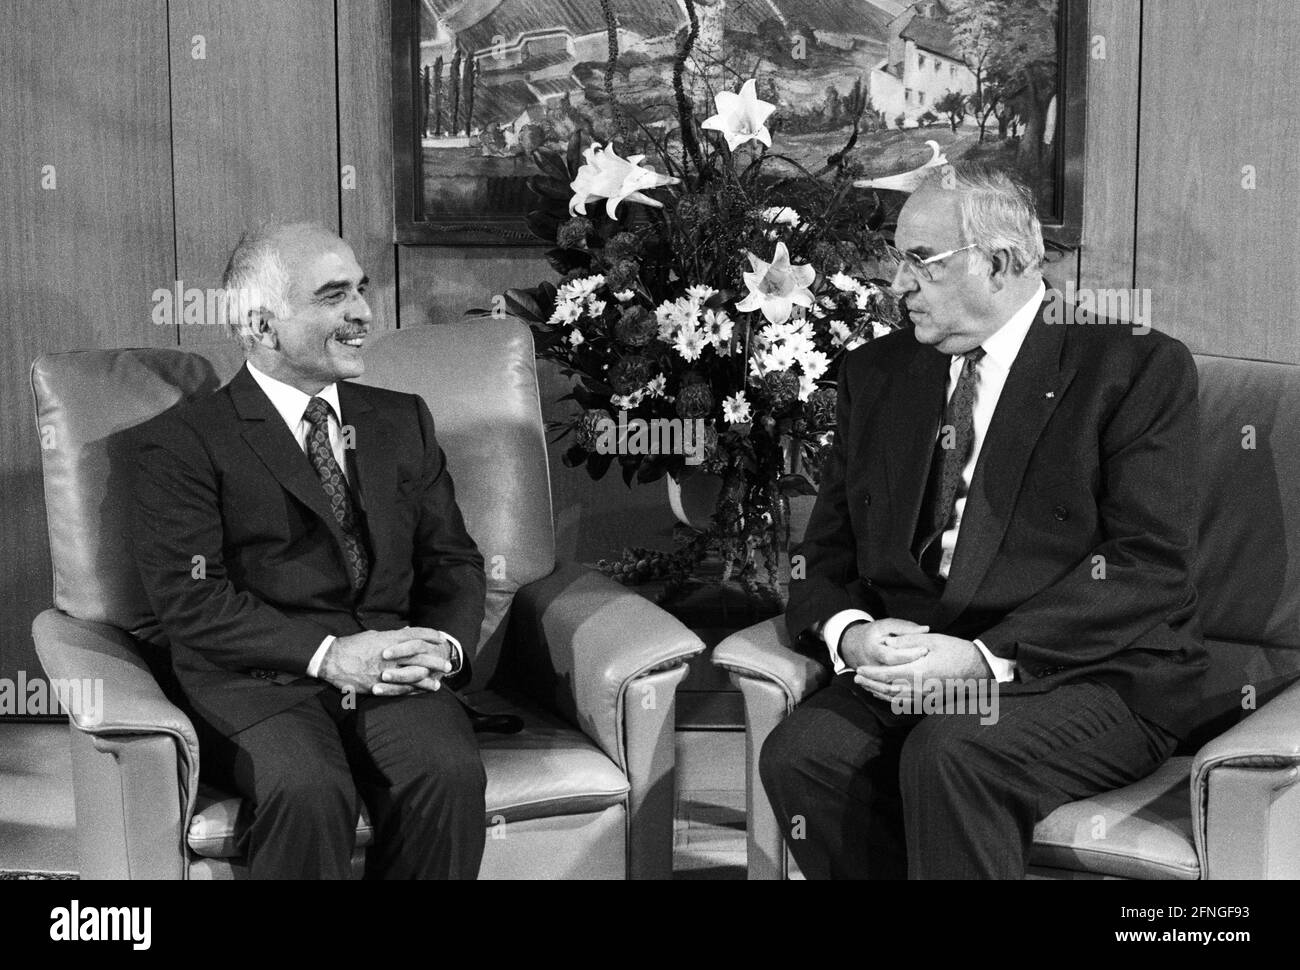 Allemagne, Bonn, 03.09.1990 Archive-No.: 20-17-12 le roi Hussein de Jordanie à Bonn photo: Le chancelier fédéral Helmut Kohl et le roi Hussein Bin Talal [traduction automatique] Banque D'Images